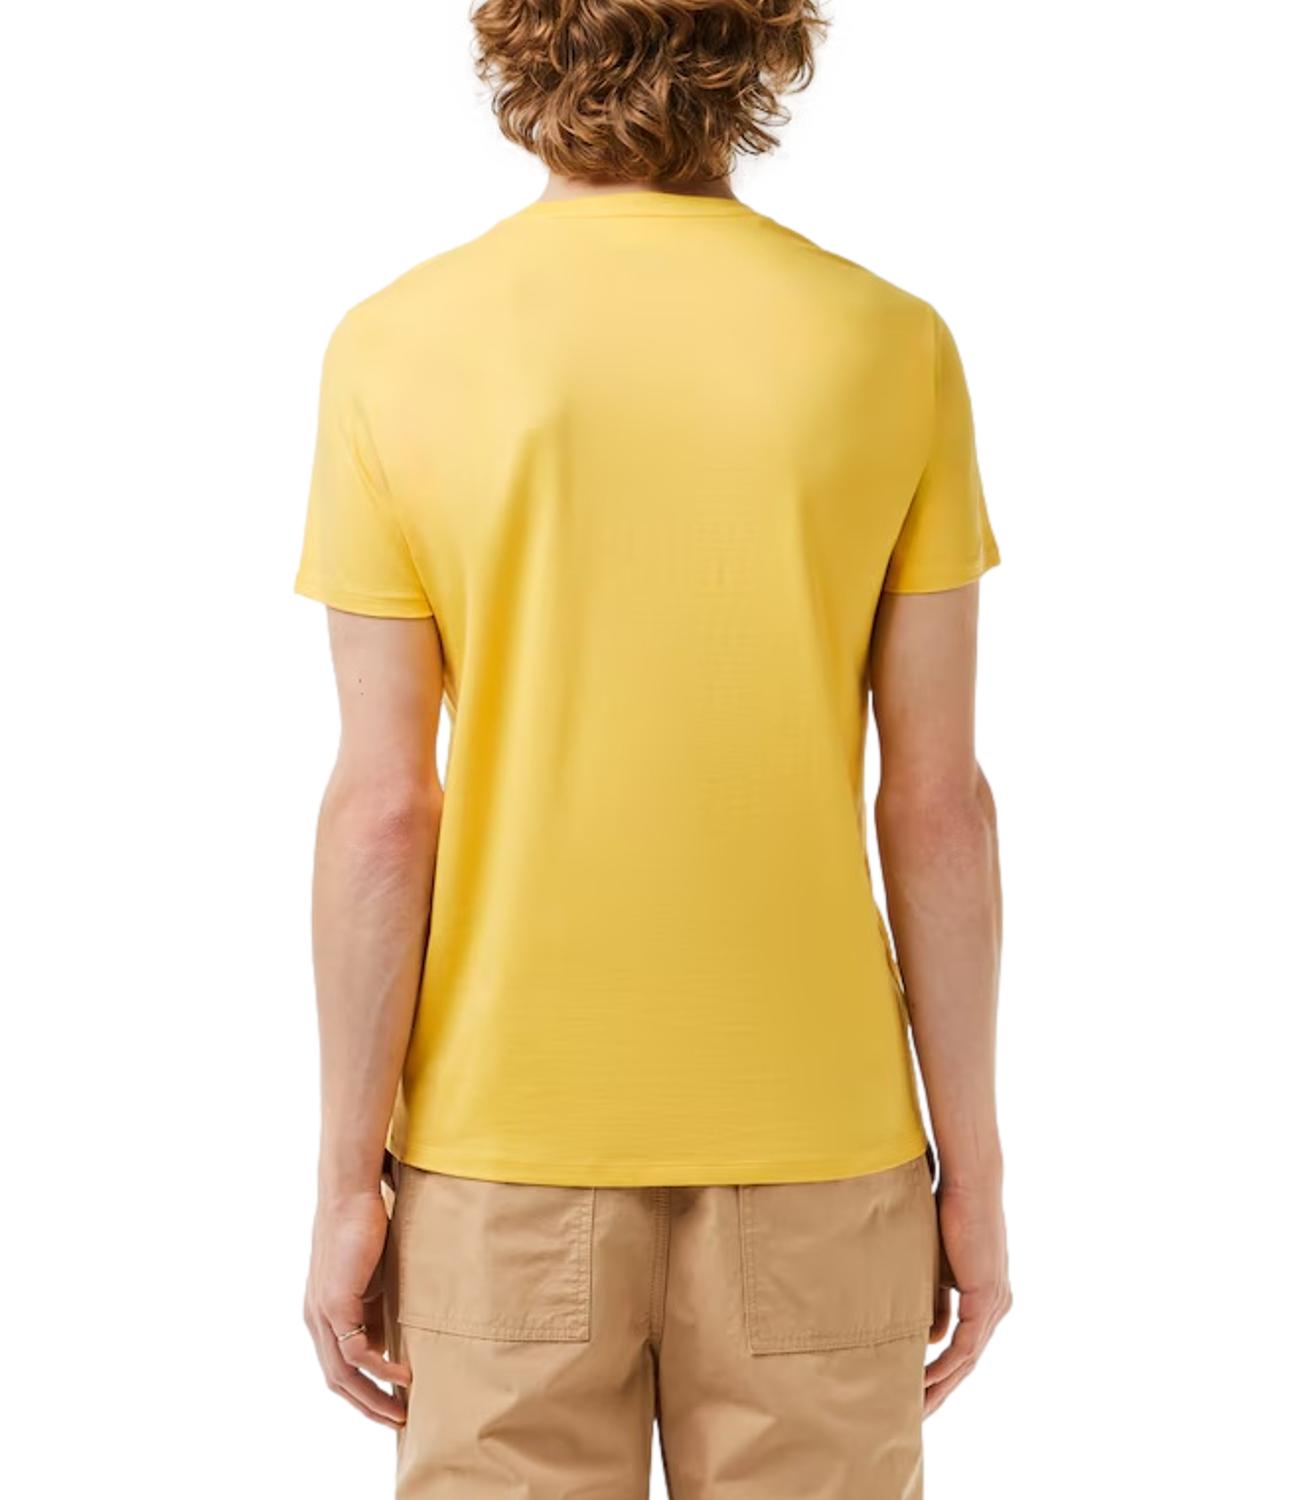 T-shirt Lacoste giallo pastello